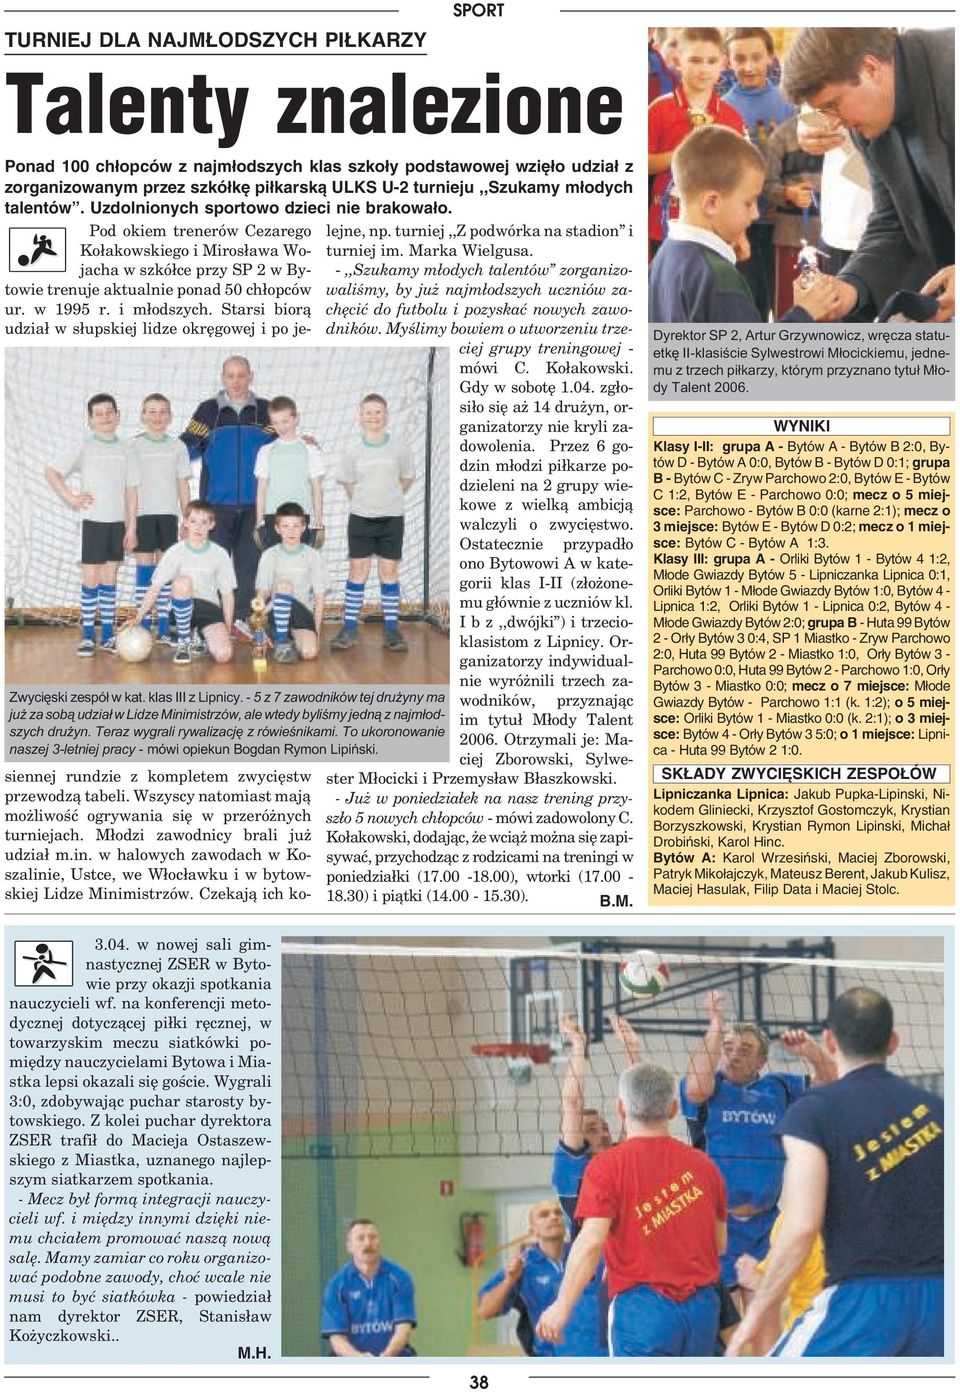 w 1995 r. i młodszych. Starsi biorą udział w słupskiej lidze okręgowej i po je Zwyciêski zespó³ w kat. klas III z Lipnicy.